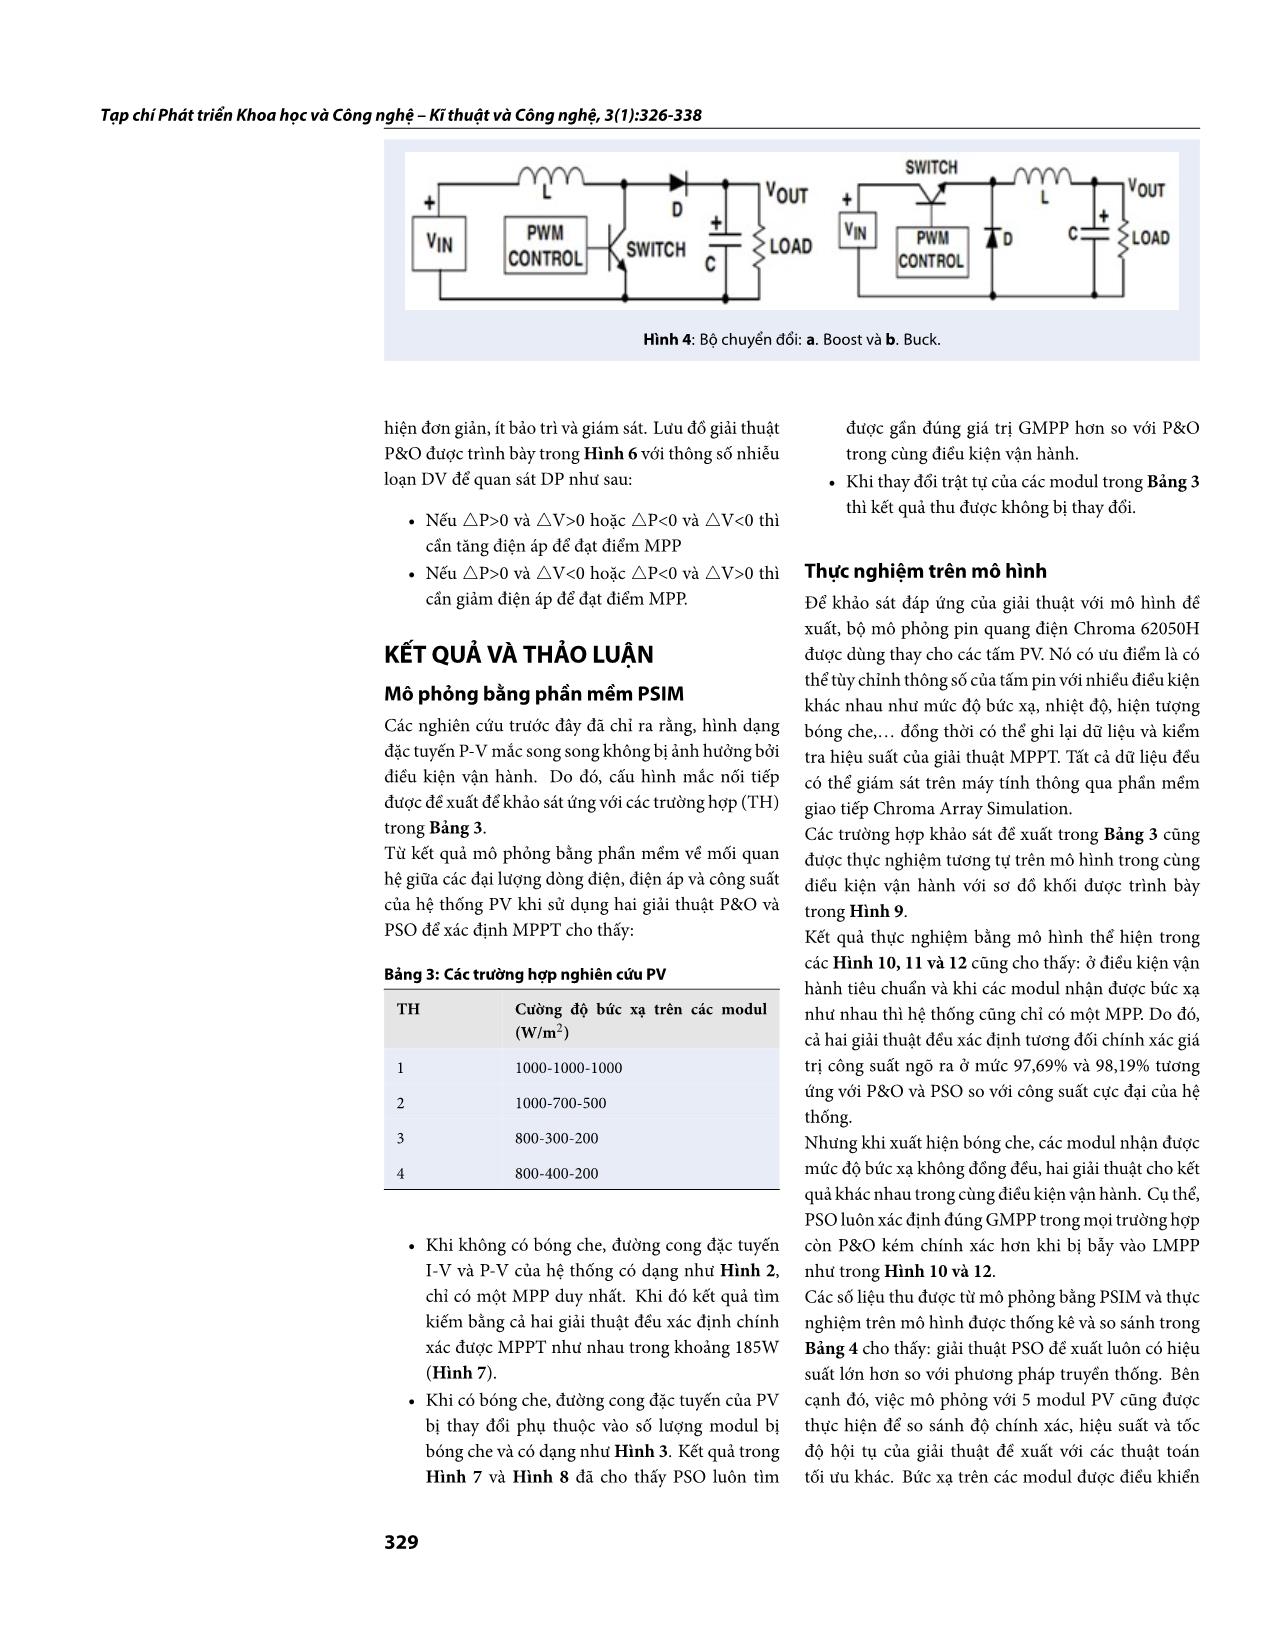 Tối ưu điểm phát công suất cực đại của pin quang điện làm việc trong điều kiện bóng che trang 4